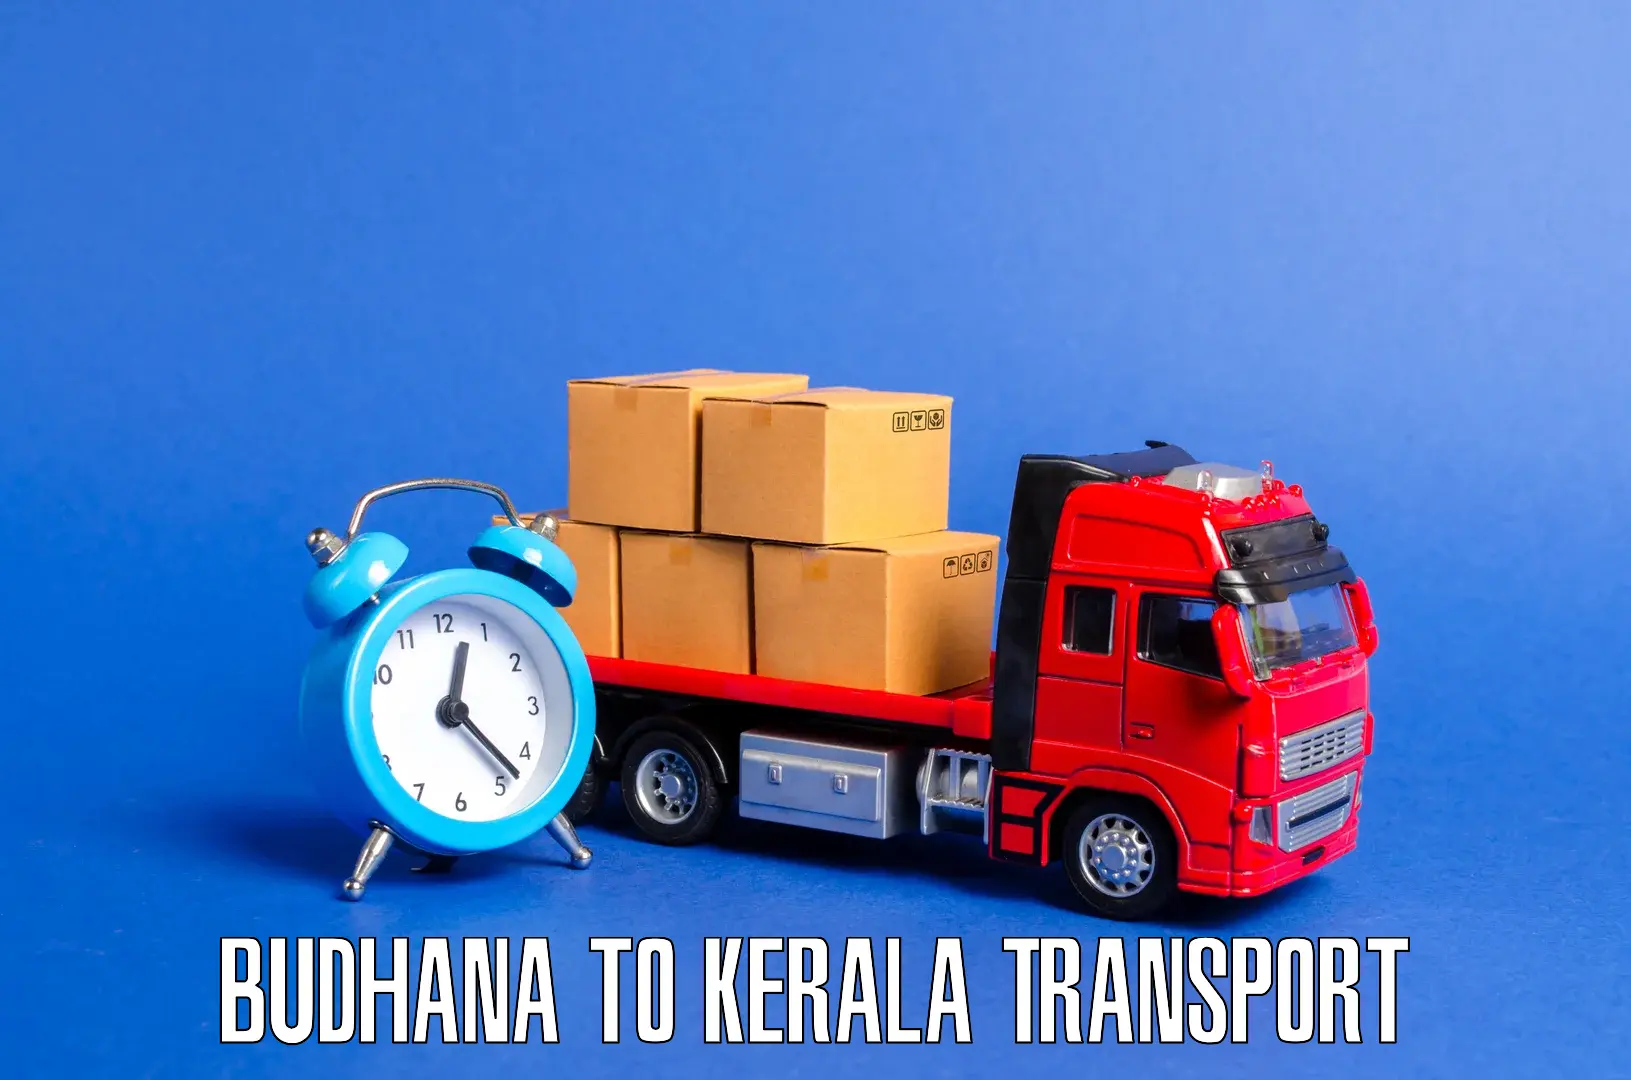 Cargo train transport services in Budhana to Haripad